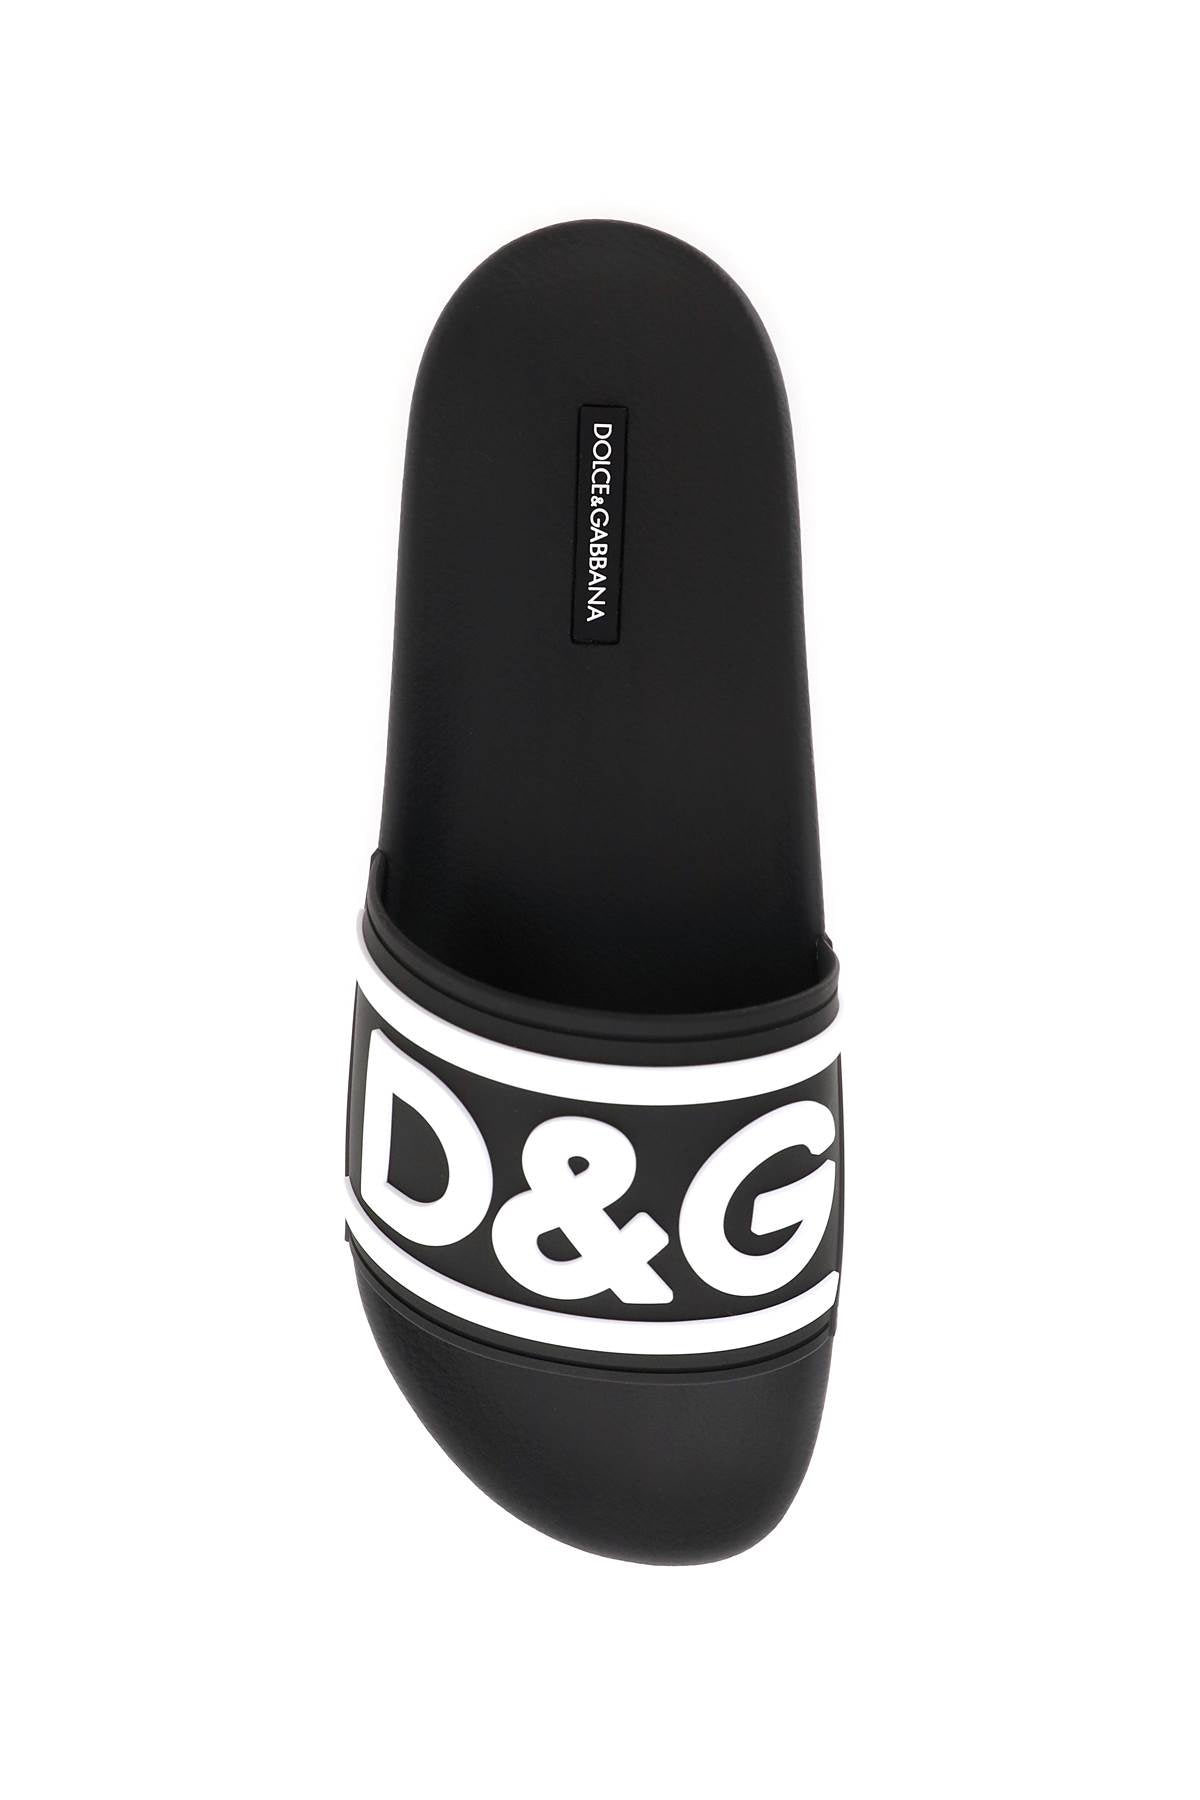 Dolce & Gabbana Dolce & gabbana logo rubber slides